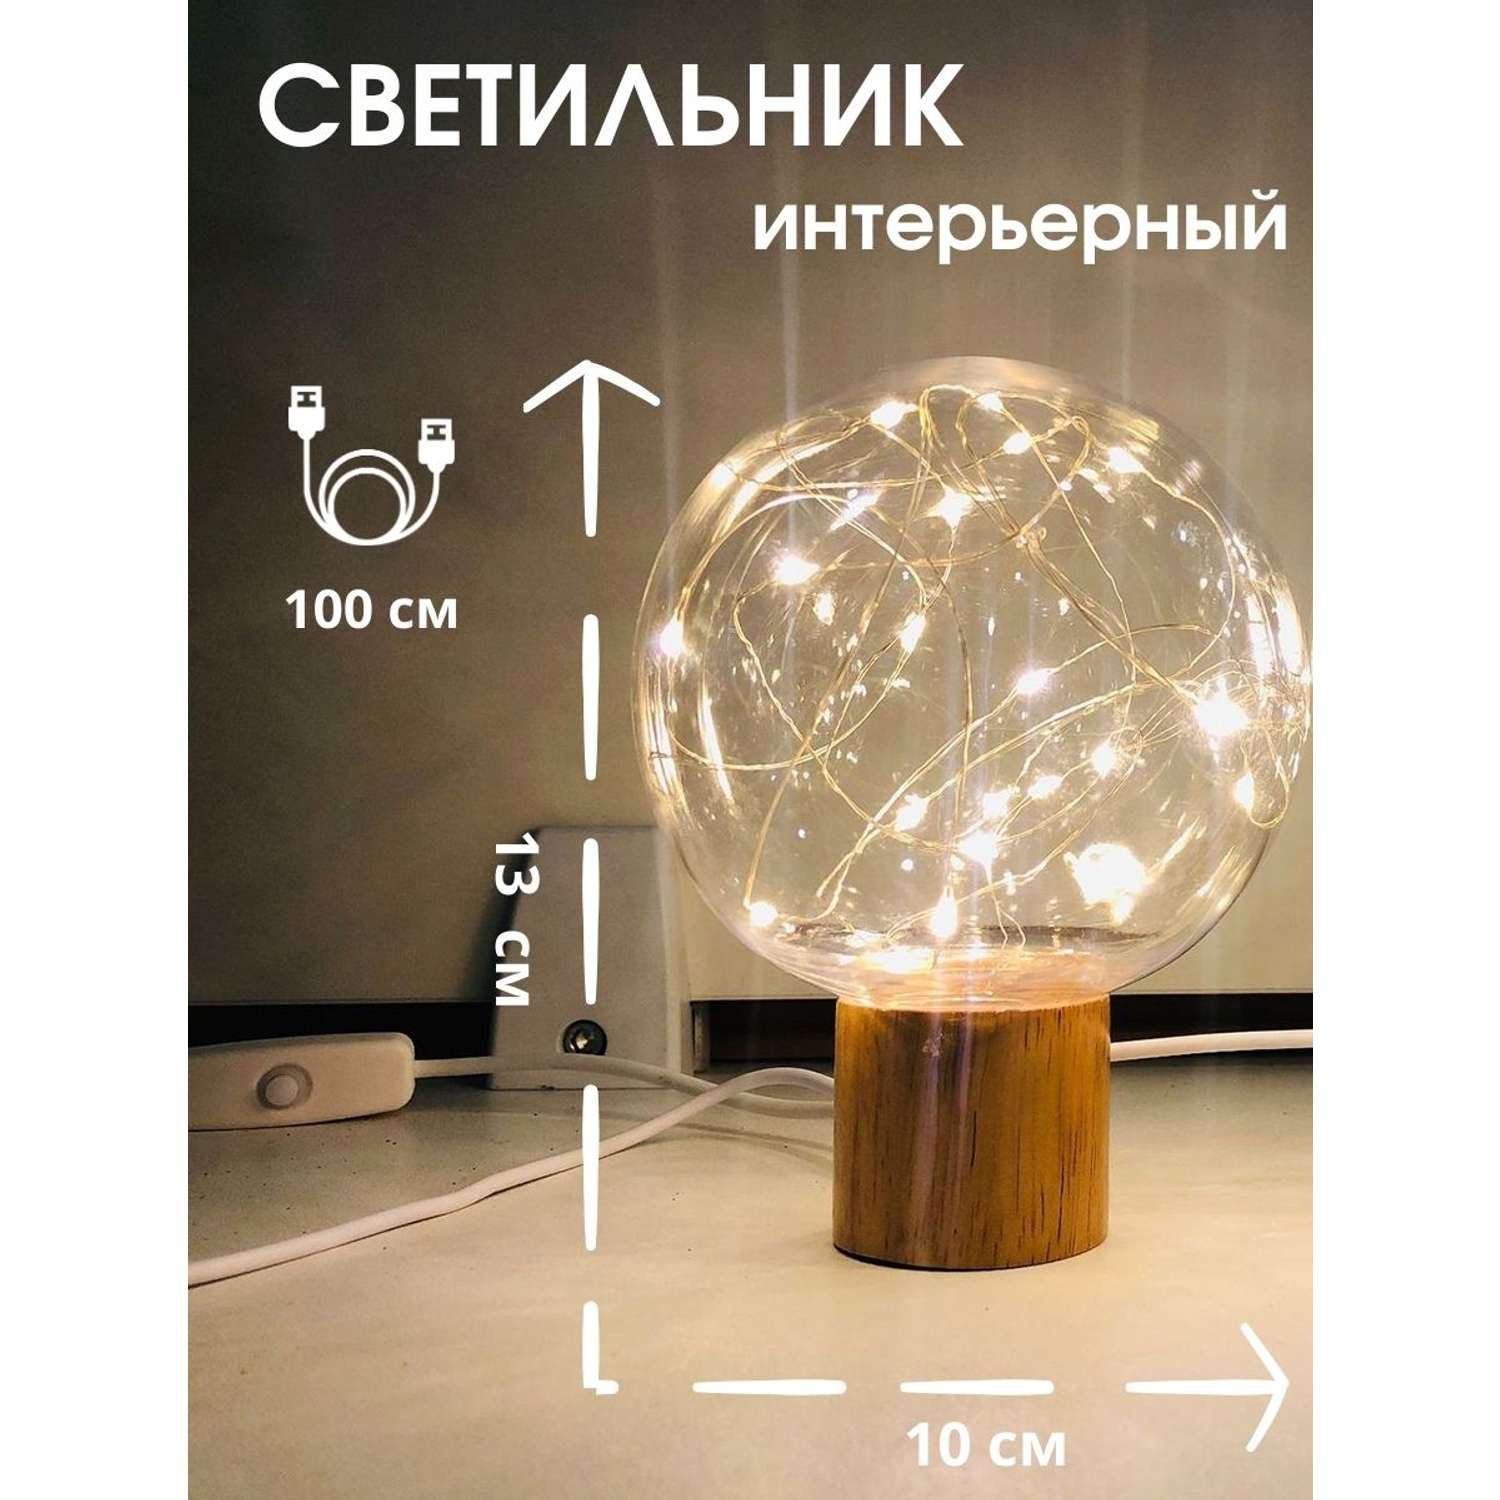 Лампа интерьерная настольная LATS ночник сфера - фото 2